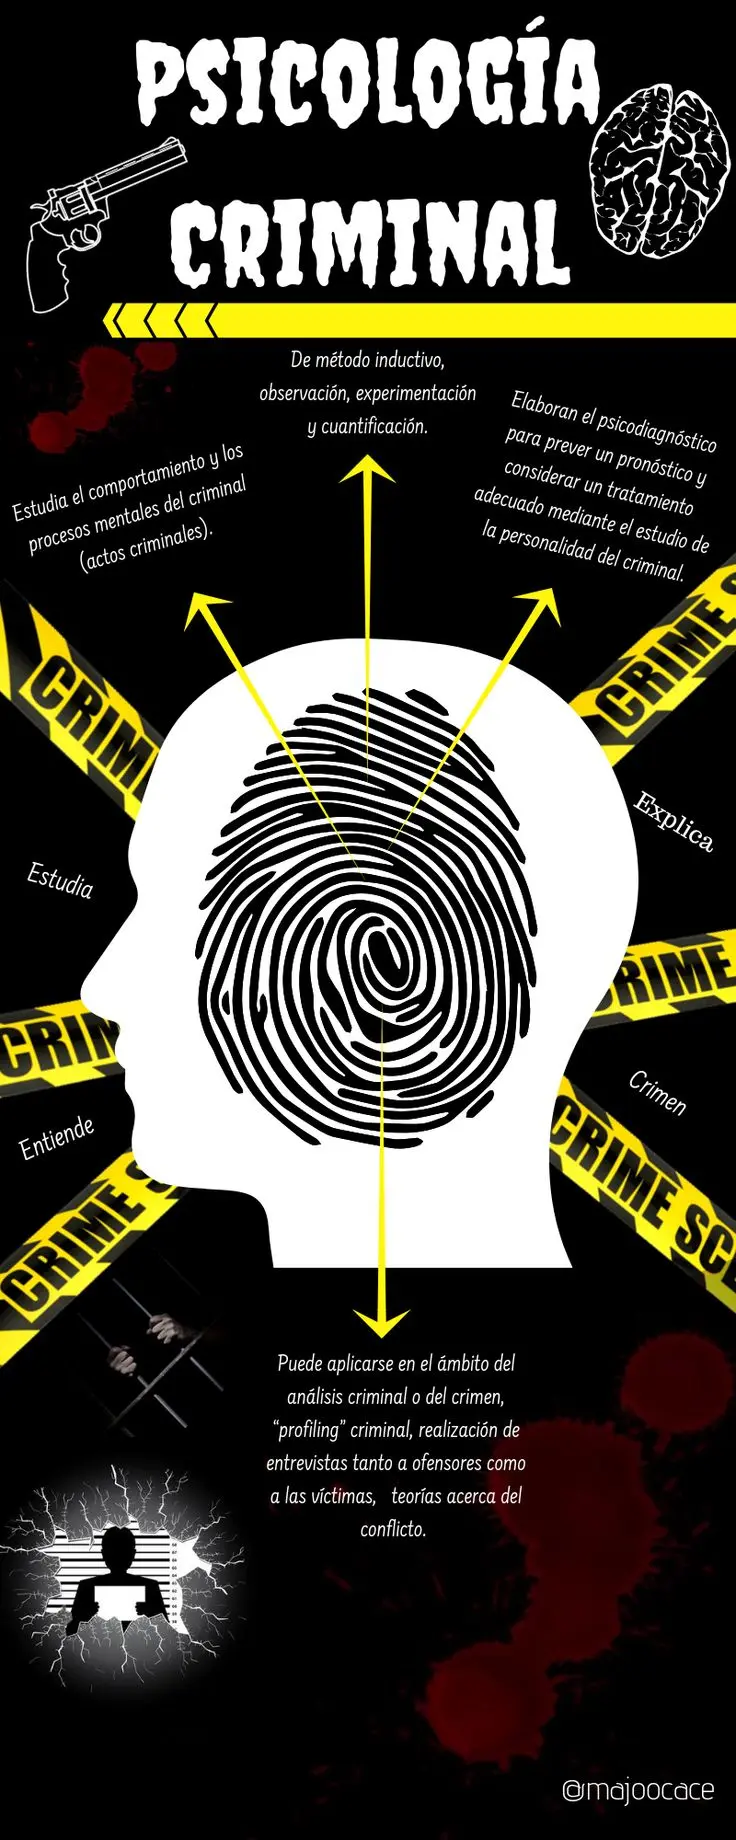 temas de psicologia criminal - Qué temas se pueden investigar en criminalística